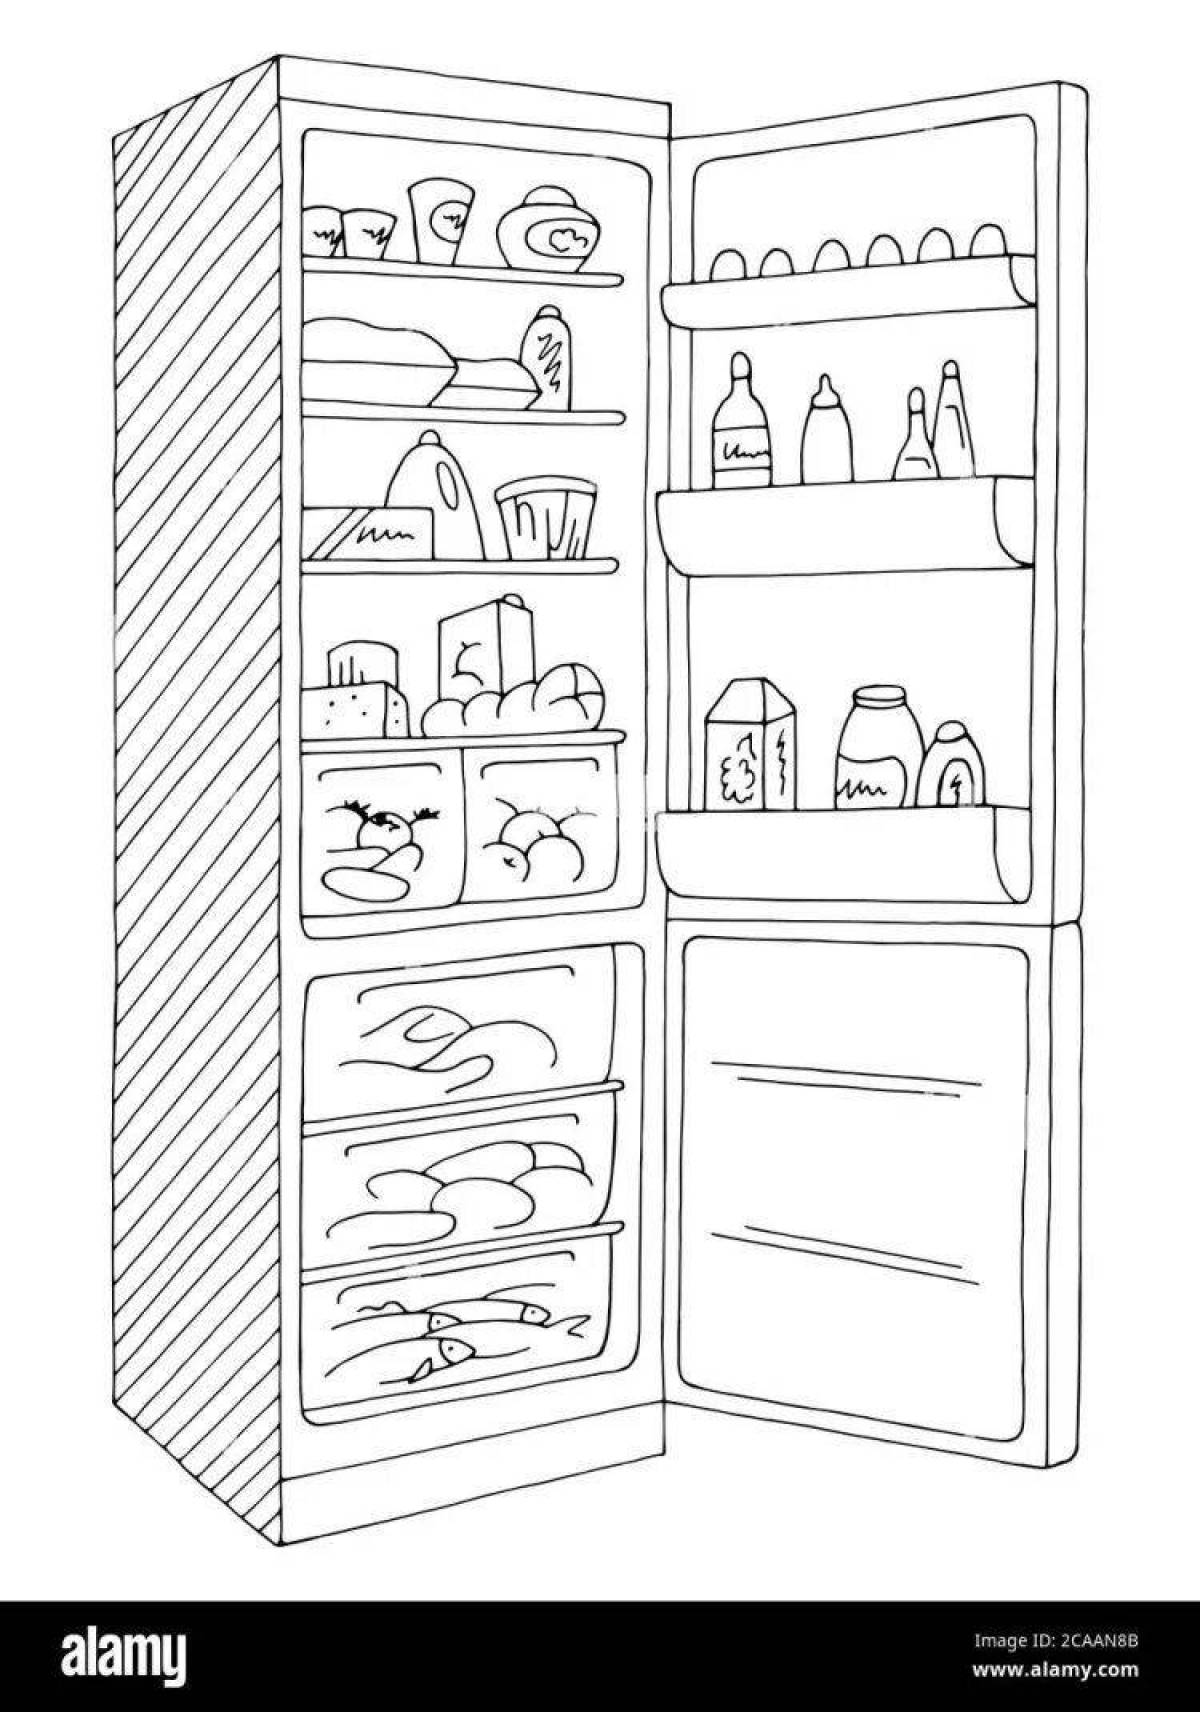 Food fridge #5